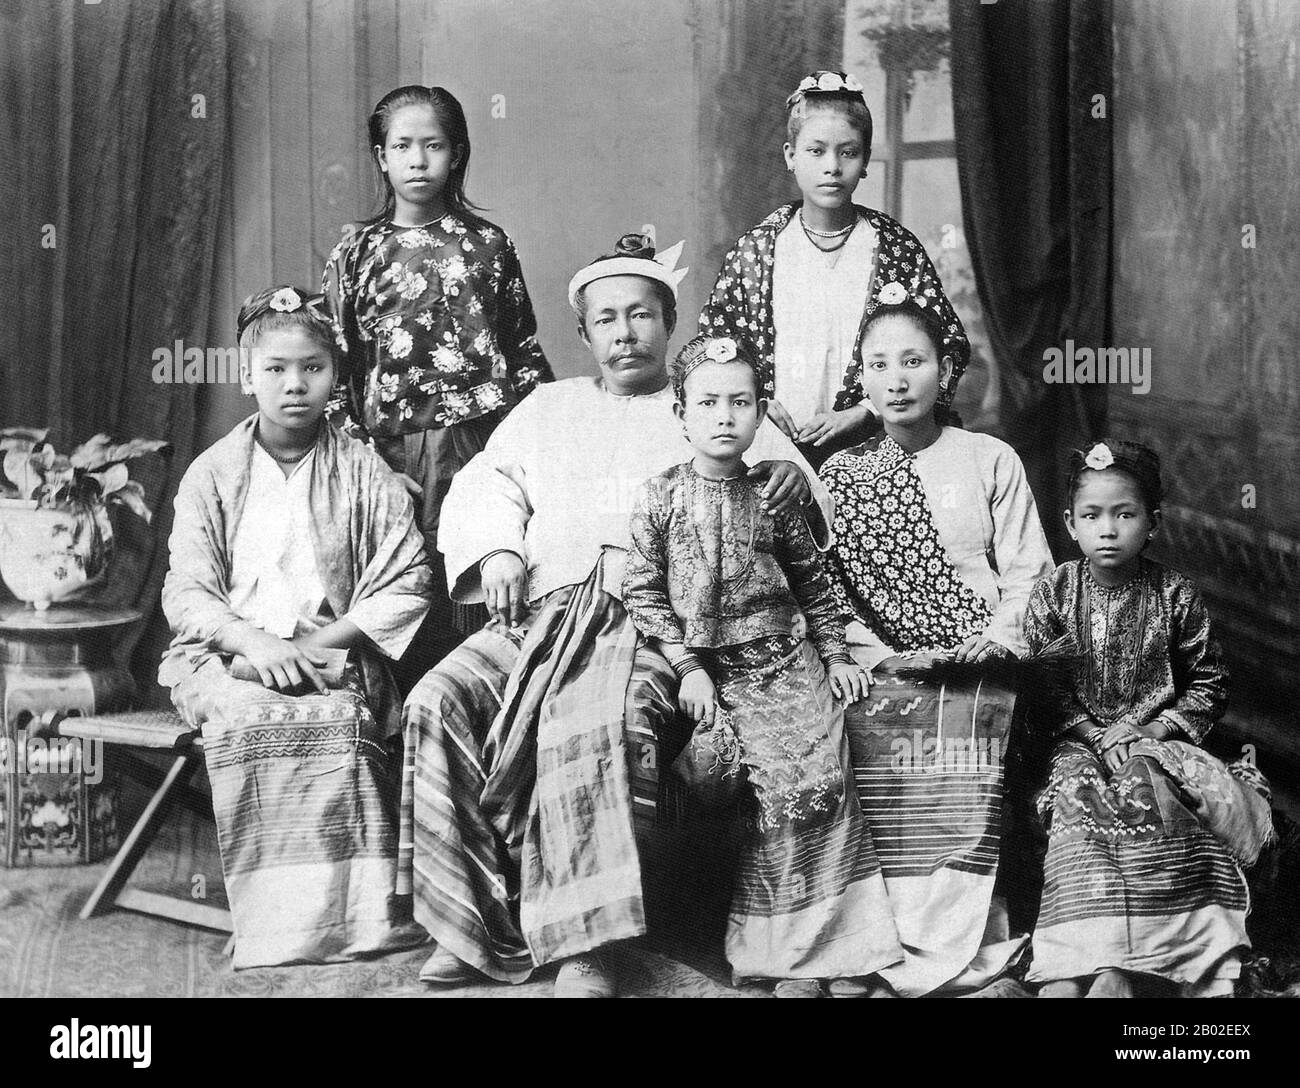 La conquista britannica della Birmania iniziò nel 1824 in risposta ad un tentativo birmano di invadere l'India. Nel 1886, e dopo due ulteriori guerre, la Gran Bretagna aveva incorporato l'intero paese nel Raj britannico. Per stimolare il commercio e facilitare i cambiamenti, gli inglesi portarono indiani e cinesi, che spostarono rapidamente i birmani nelle aree urbane. A questo giorno Rangoon e Mandalay hanno grandi popolazioni etniche indiane. Sono state costruite ferrovie e scuole, oltre a un gran numero di prigioni, tra cui la famigerata prigione di Inossein, allora come oggi utilizzata per i prigionieri politici. Il risentimento birmano era forte ed era vente Foto Stock